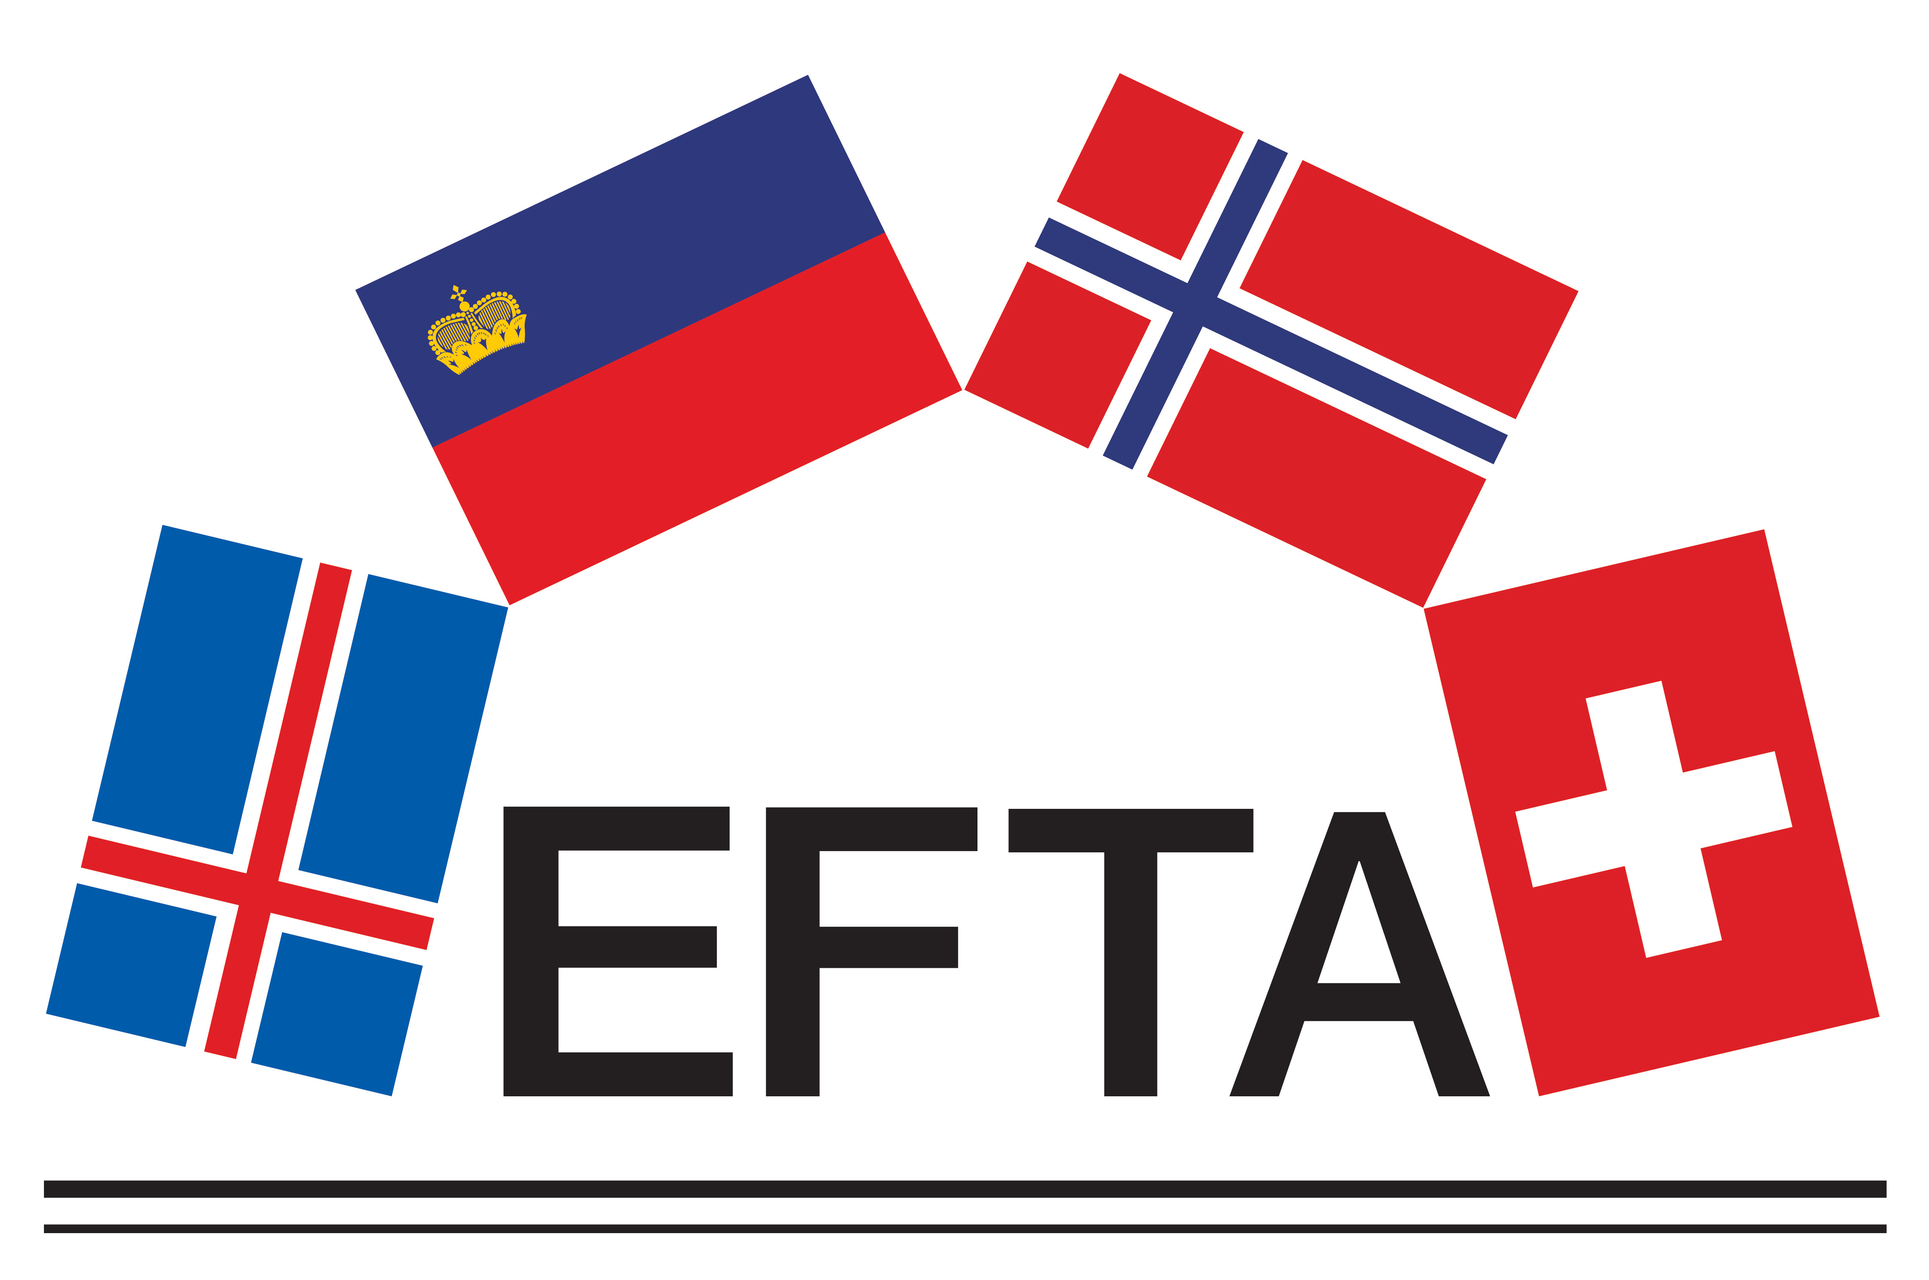 Digital handel: logoet for Den Europæiske Frihandelssammenslutning (EFTA)